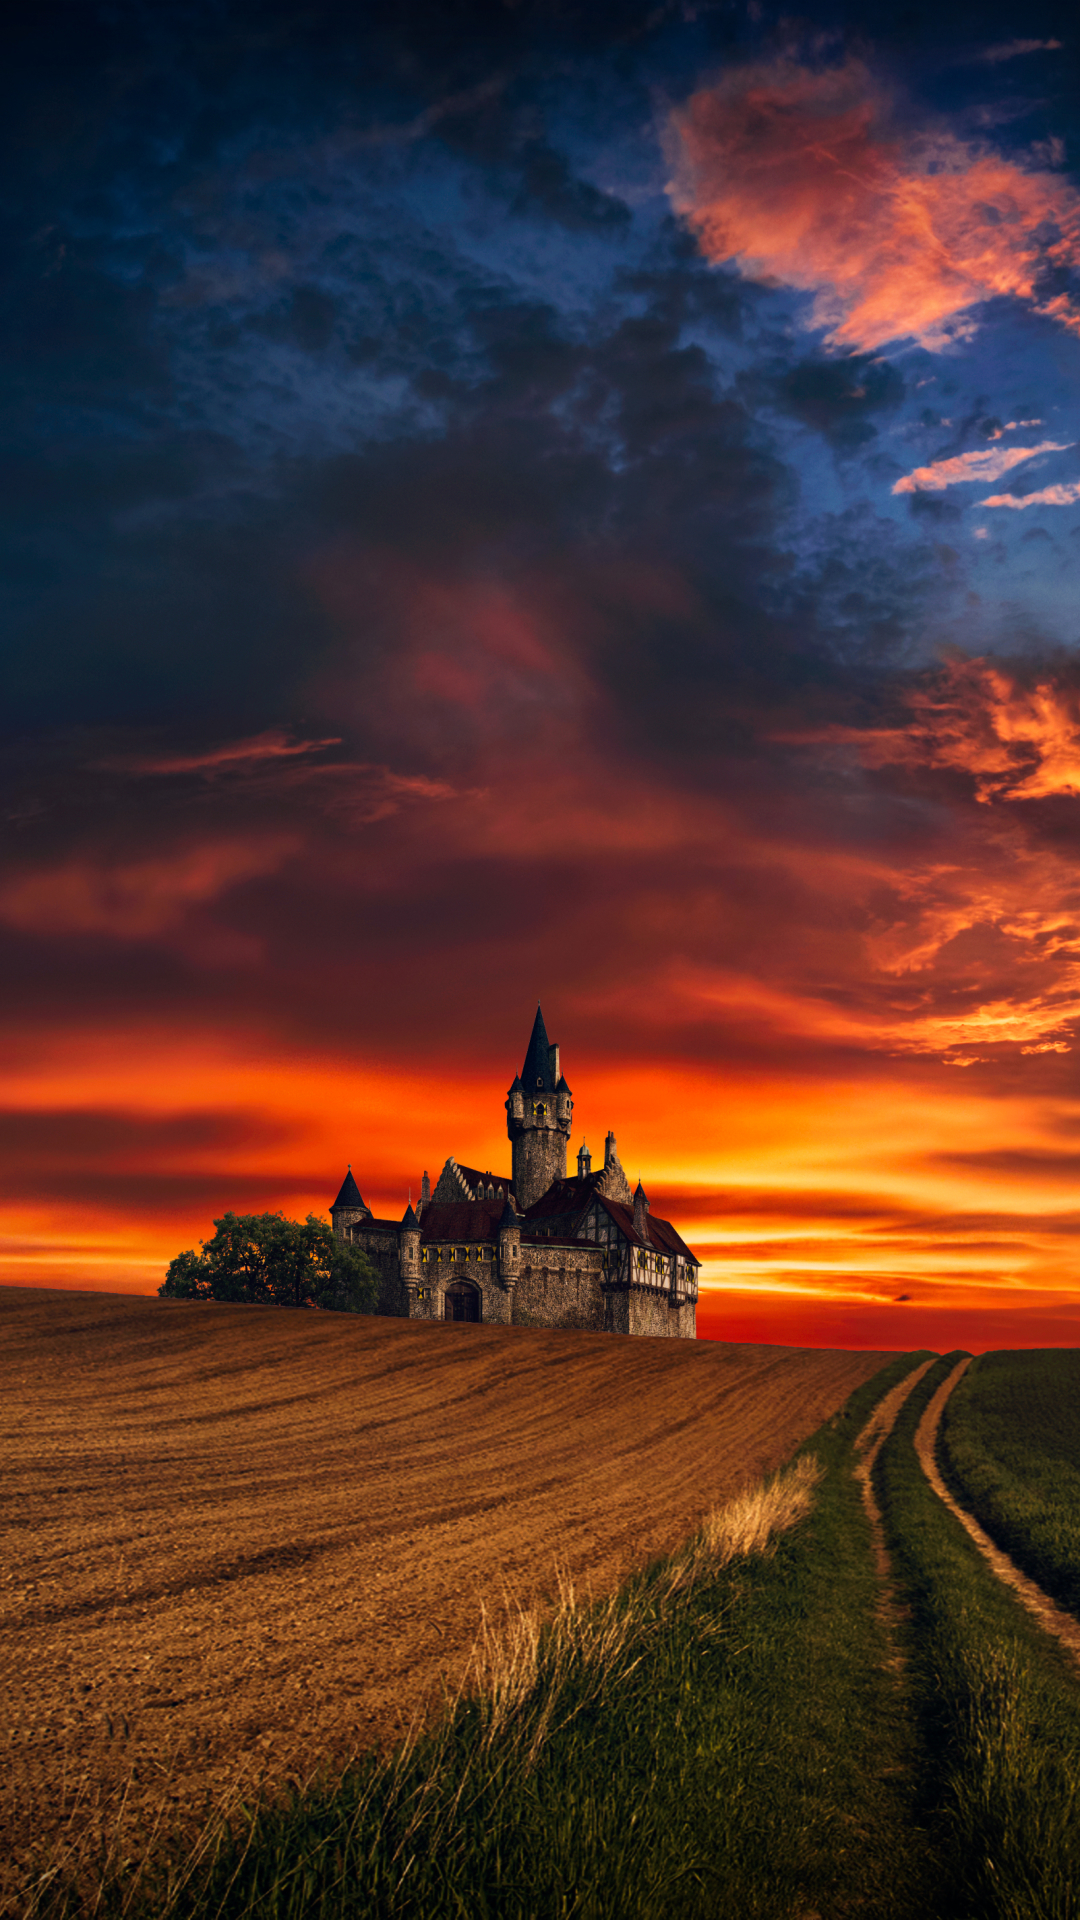 Fantasy Castle by hmetosche